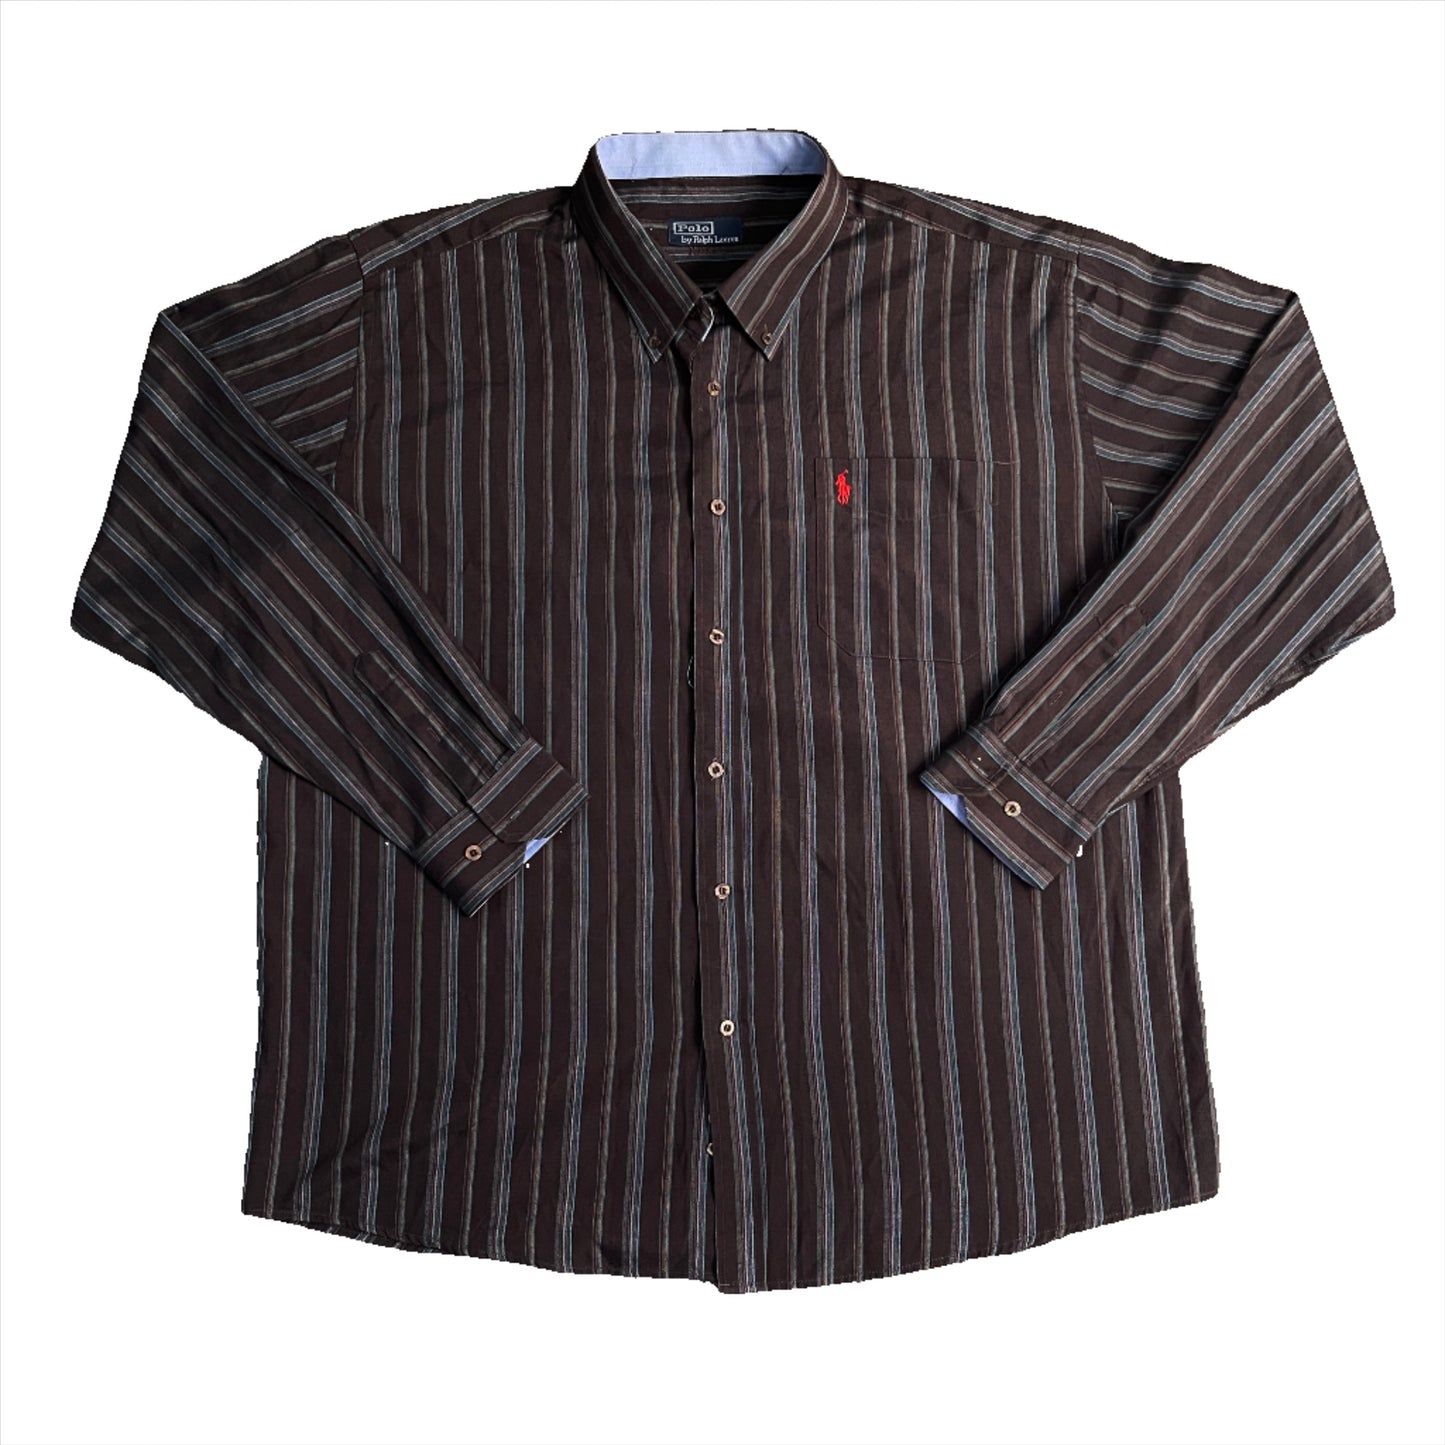 Ralph Lauren Chocolate Brown Button up Shirt (XL)